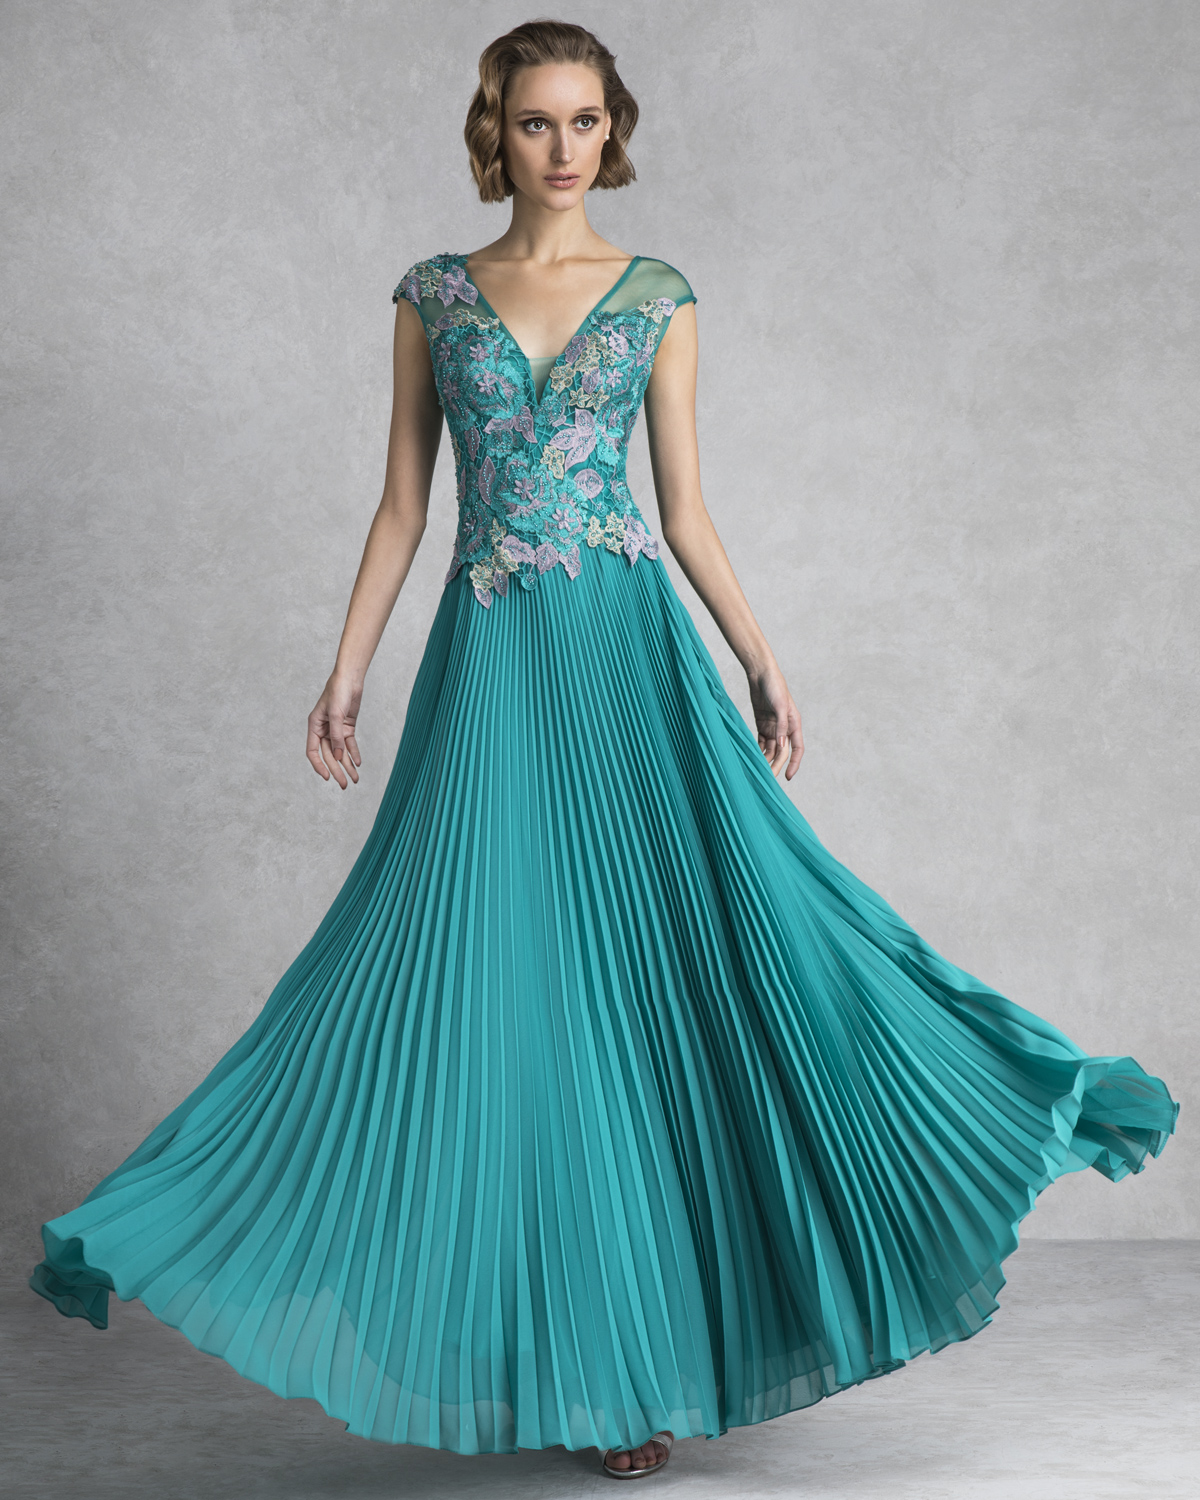 Βραδυνά Φορέματα / Βραδινό φόρεμα πλισέ με δαντελένιο μπούστο από πολύχρωμα λουλούδια